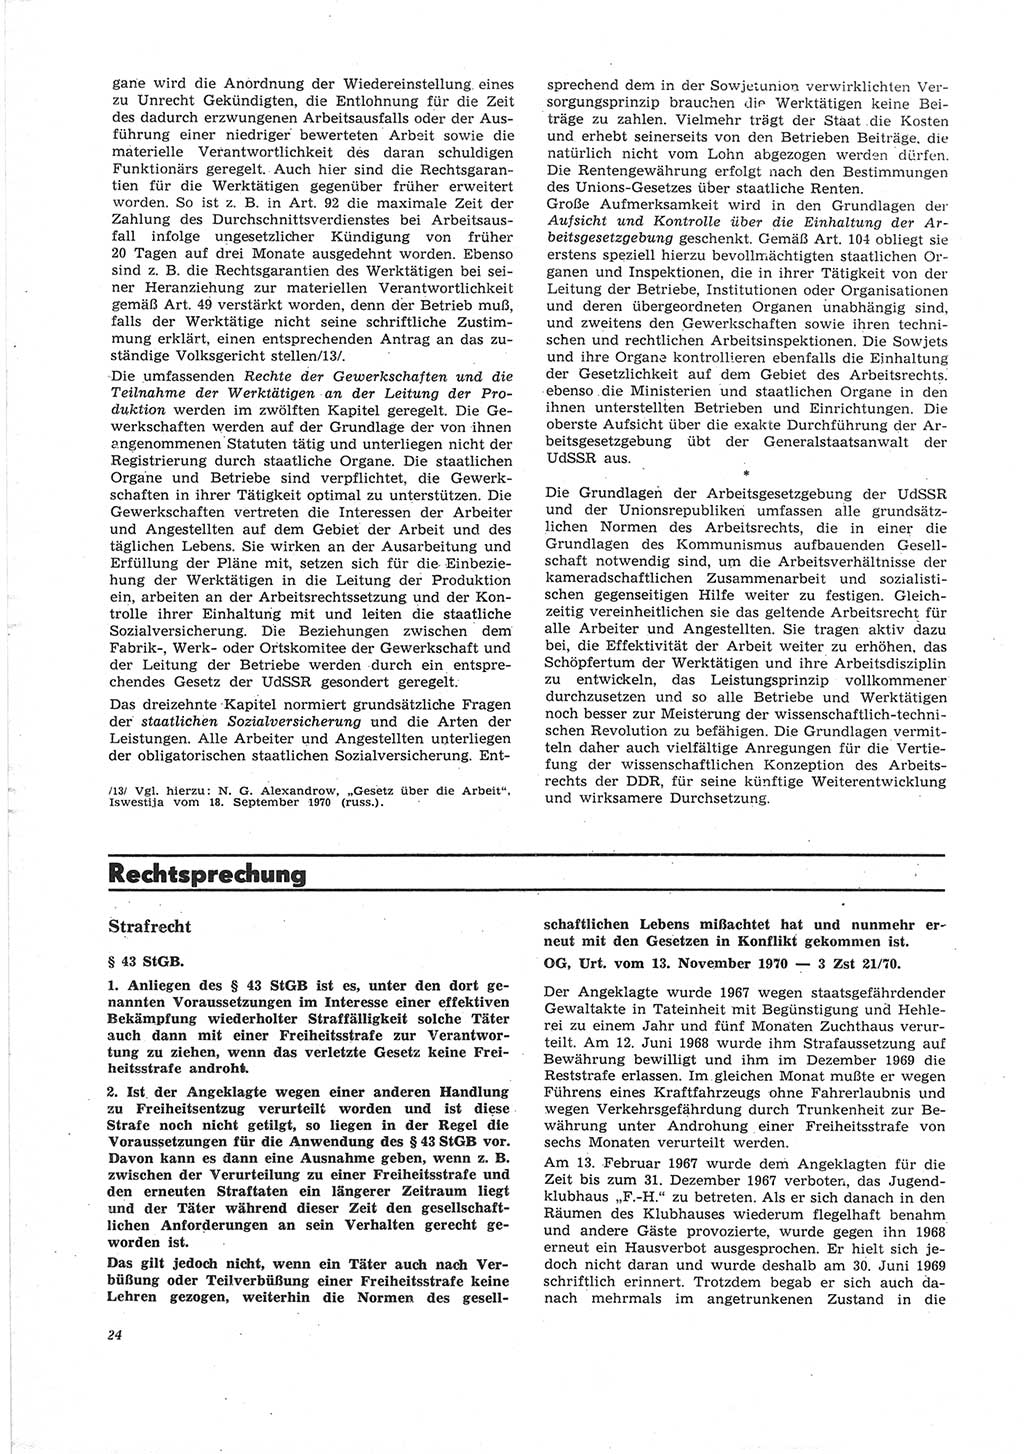 Neue Justiz (NJ), Zeitschrift für Recht und Rechtswissenschaft [Deutsche Demokratische Republik (DDR)], 25. Jahrgang 1971, Seite 24 (NJ DDR 1971, S. 24)